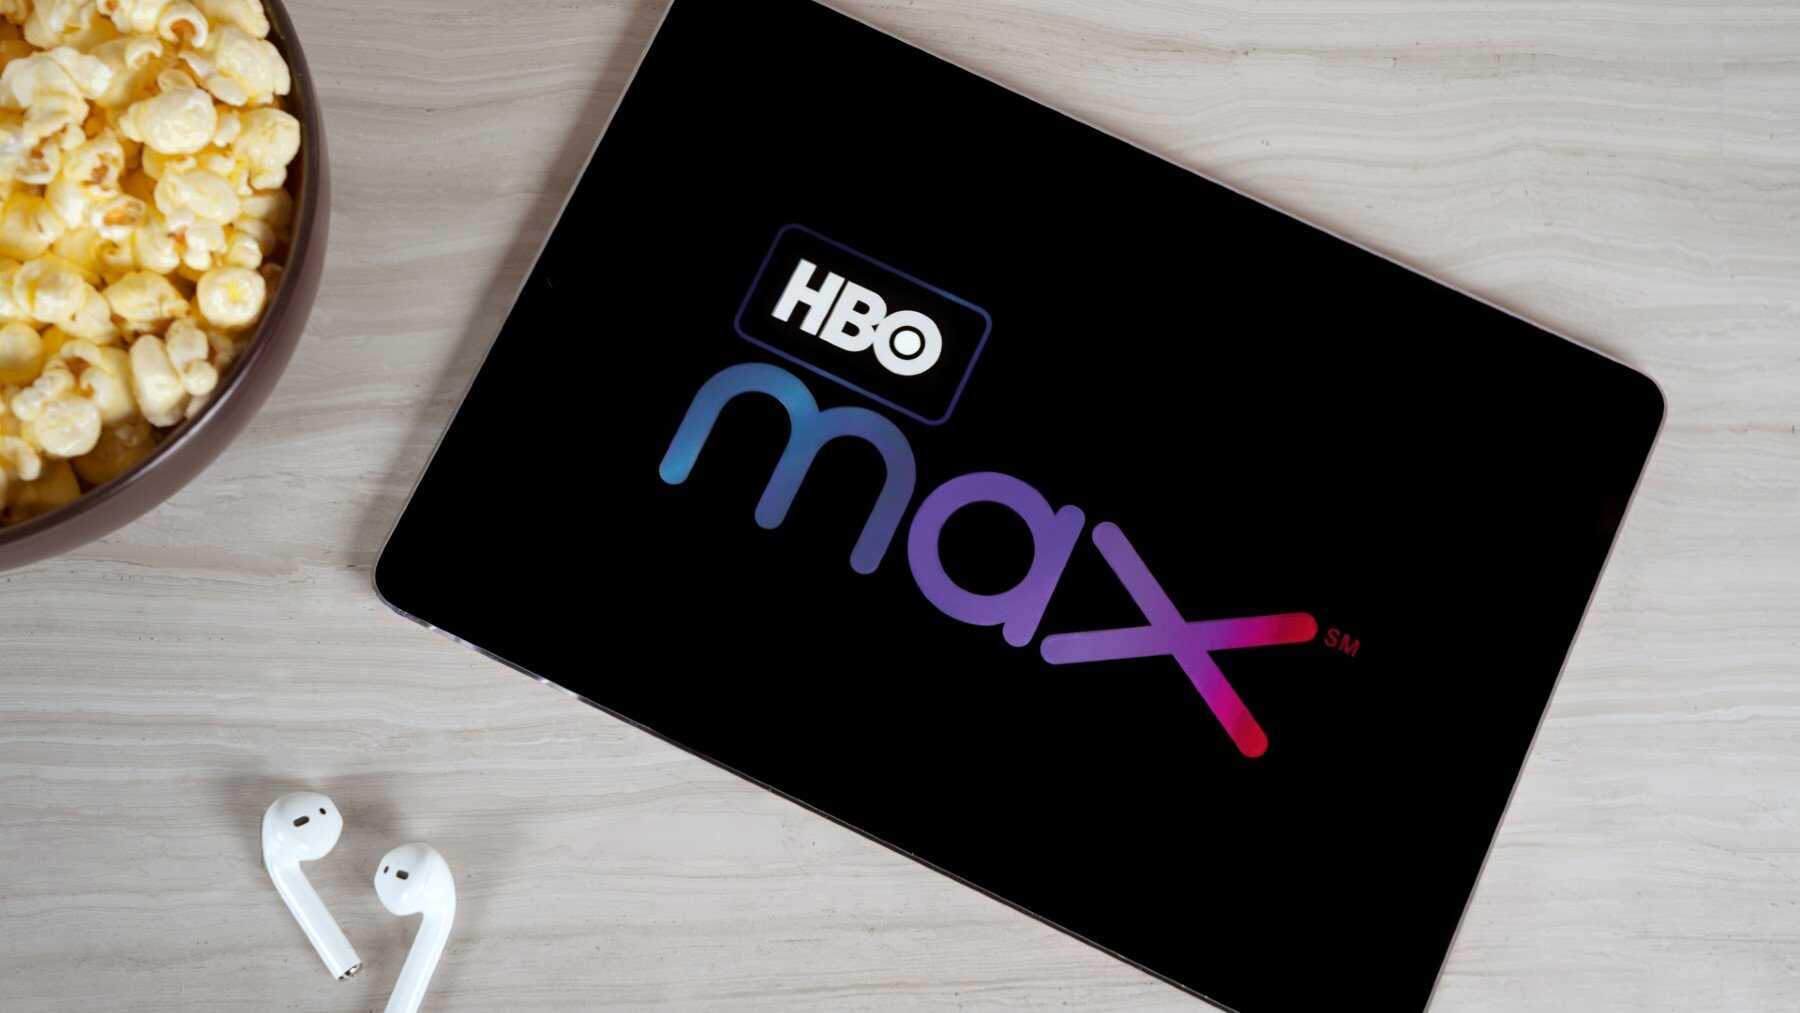 El mejor precio de HBO Max: Ahorra 38 euros contratando ahora la subscrición anual